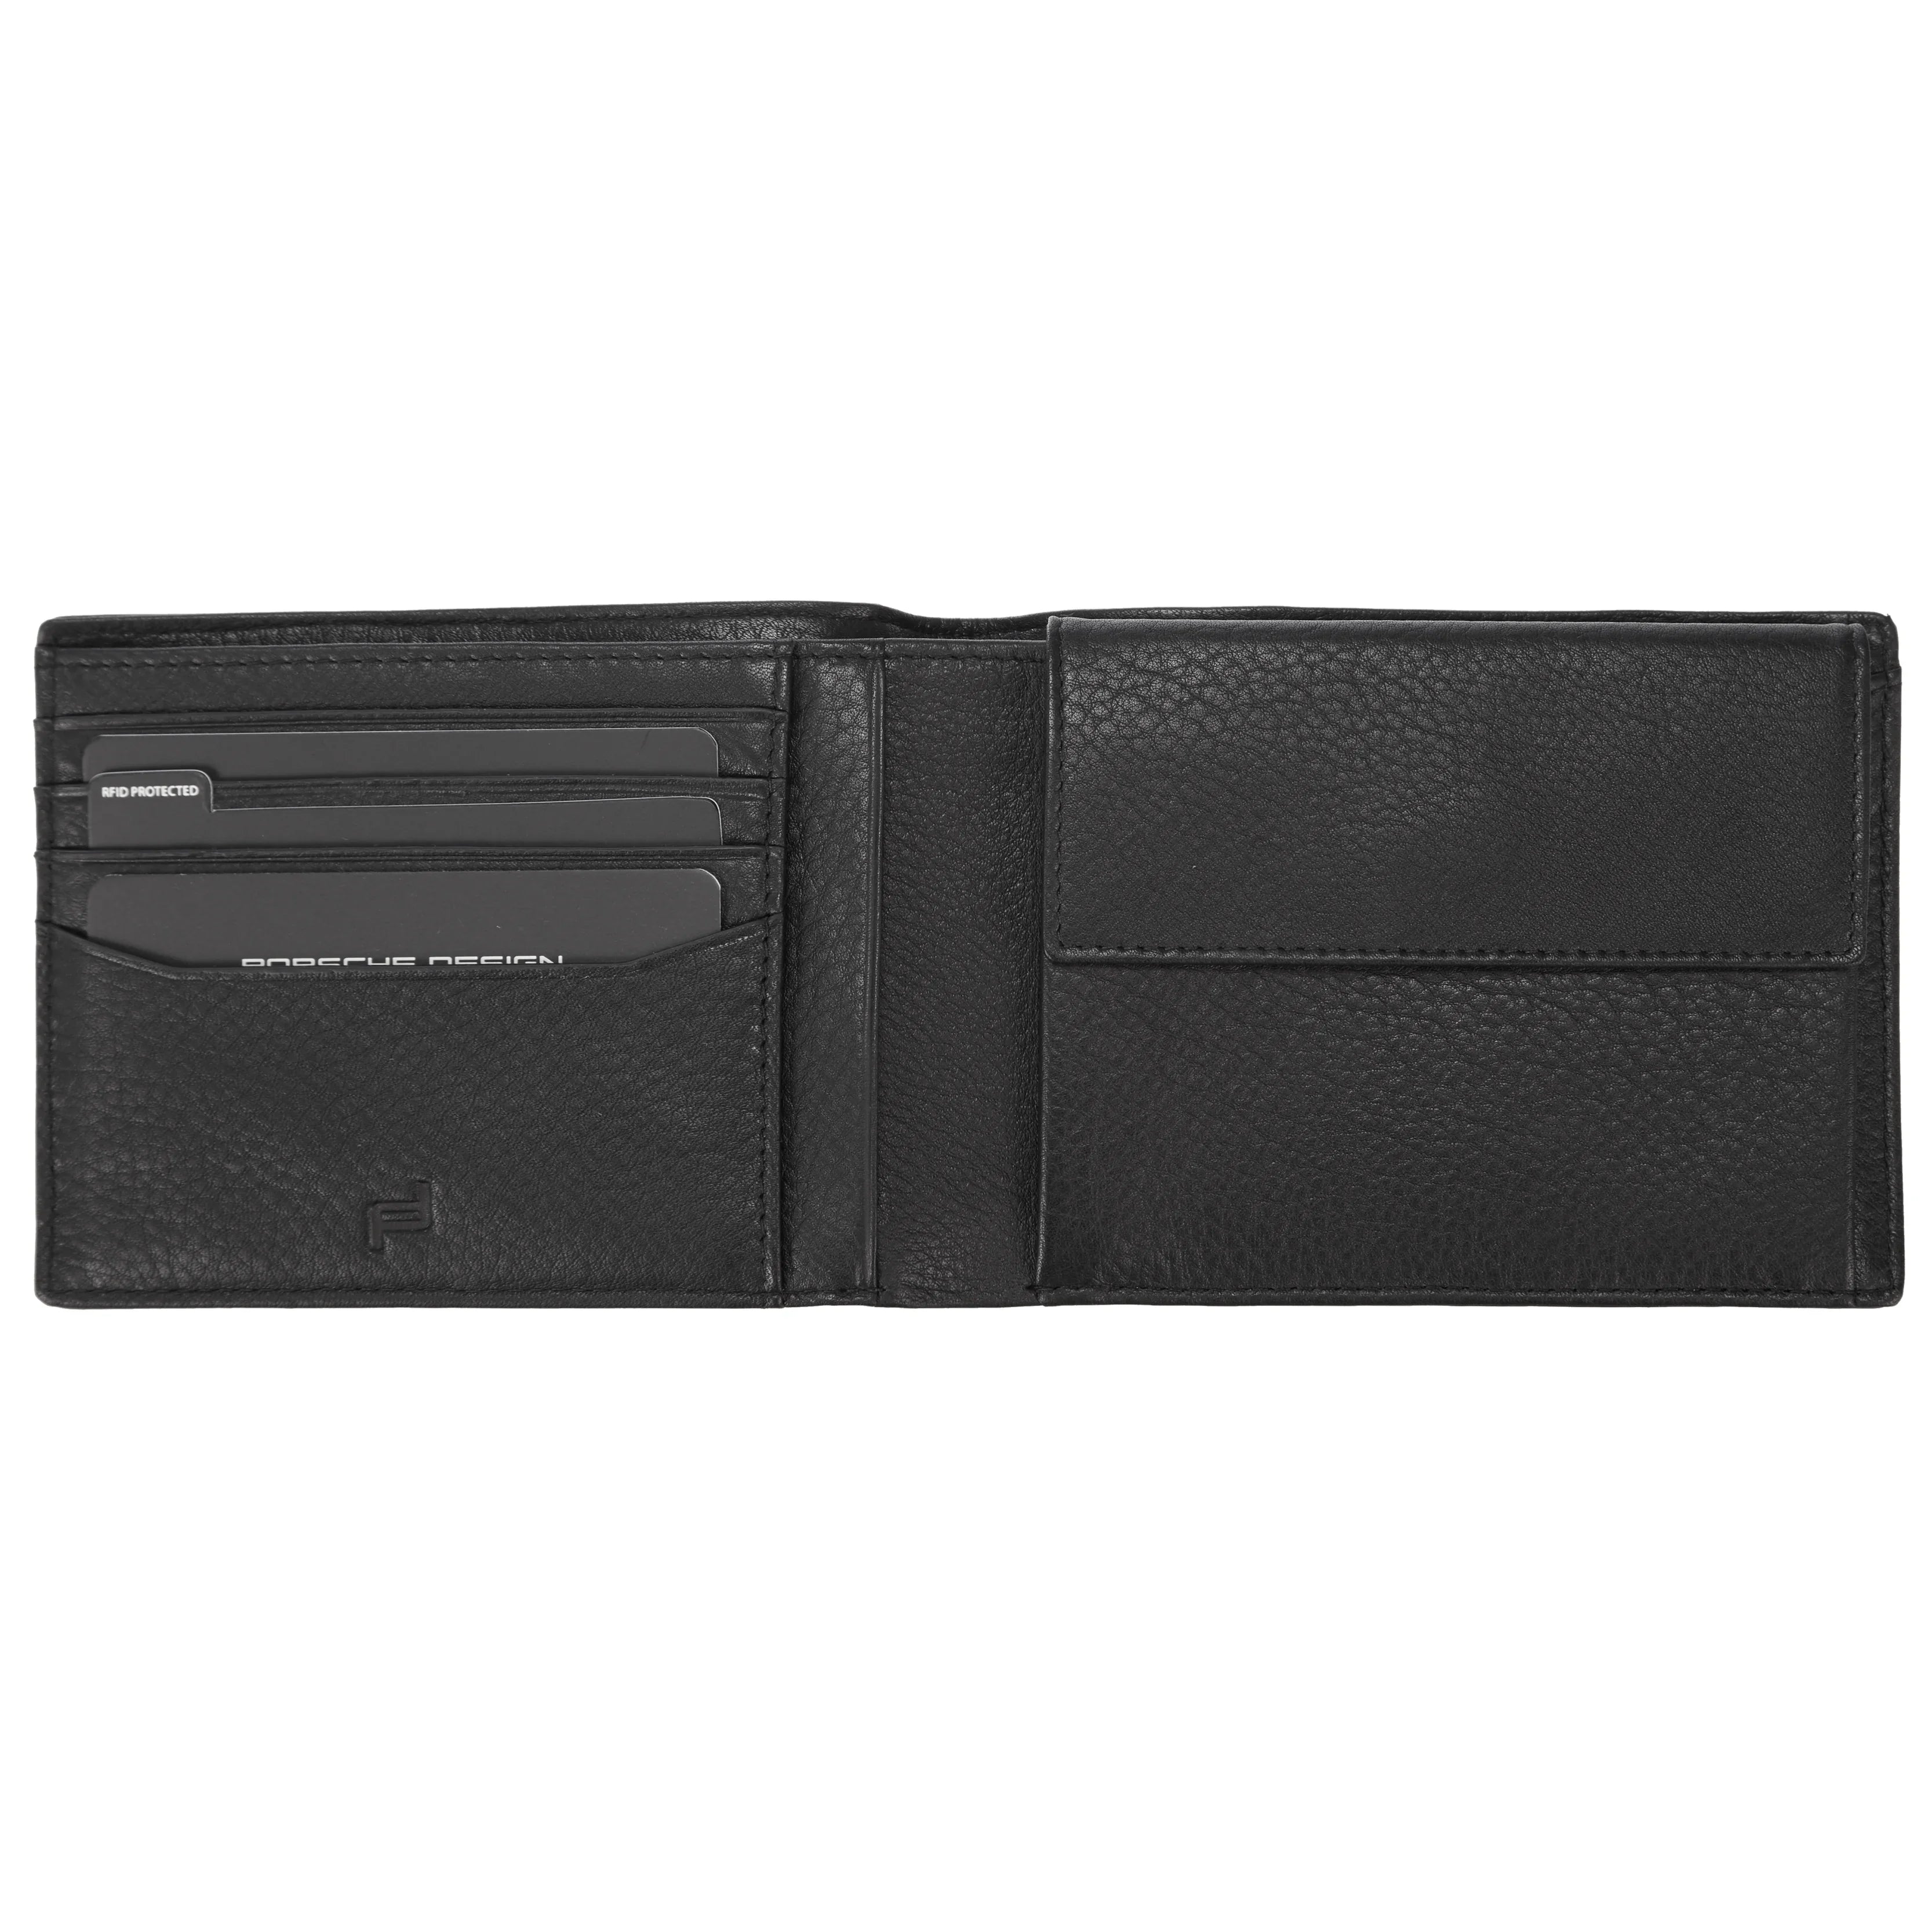 Porsche Design Accessories Business Wallet 4 wide RFID 13 cm - Black